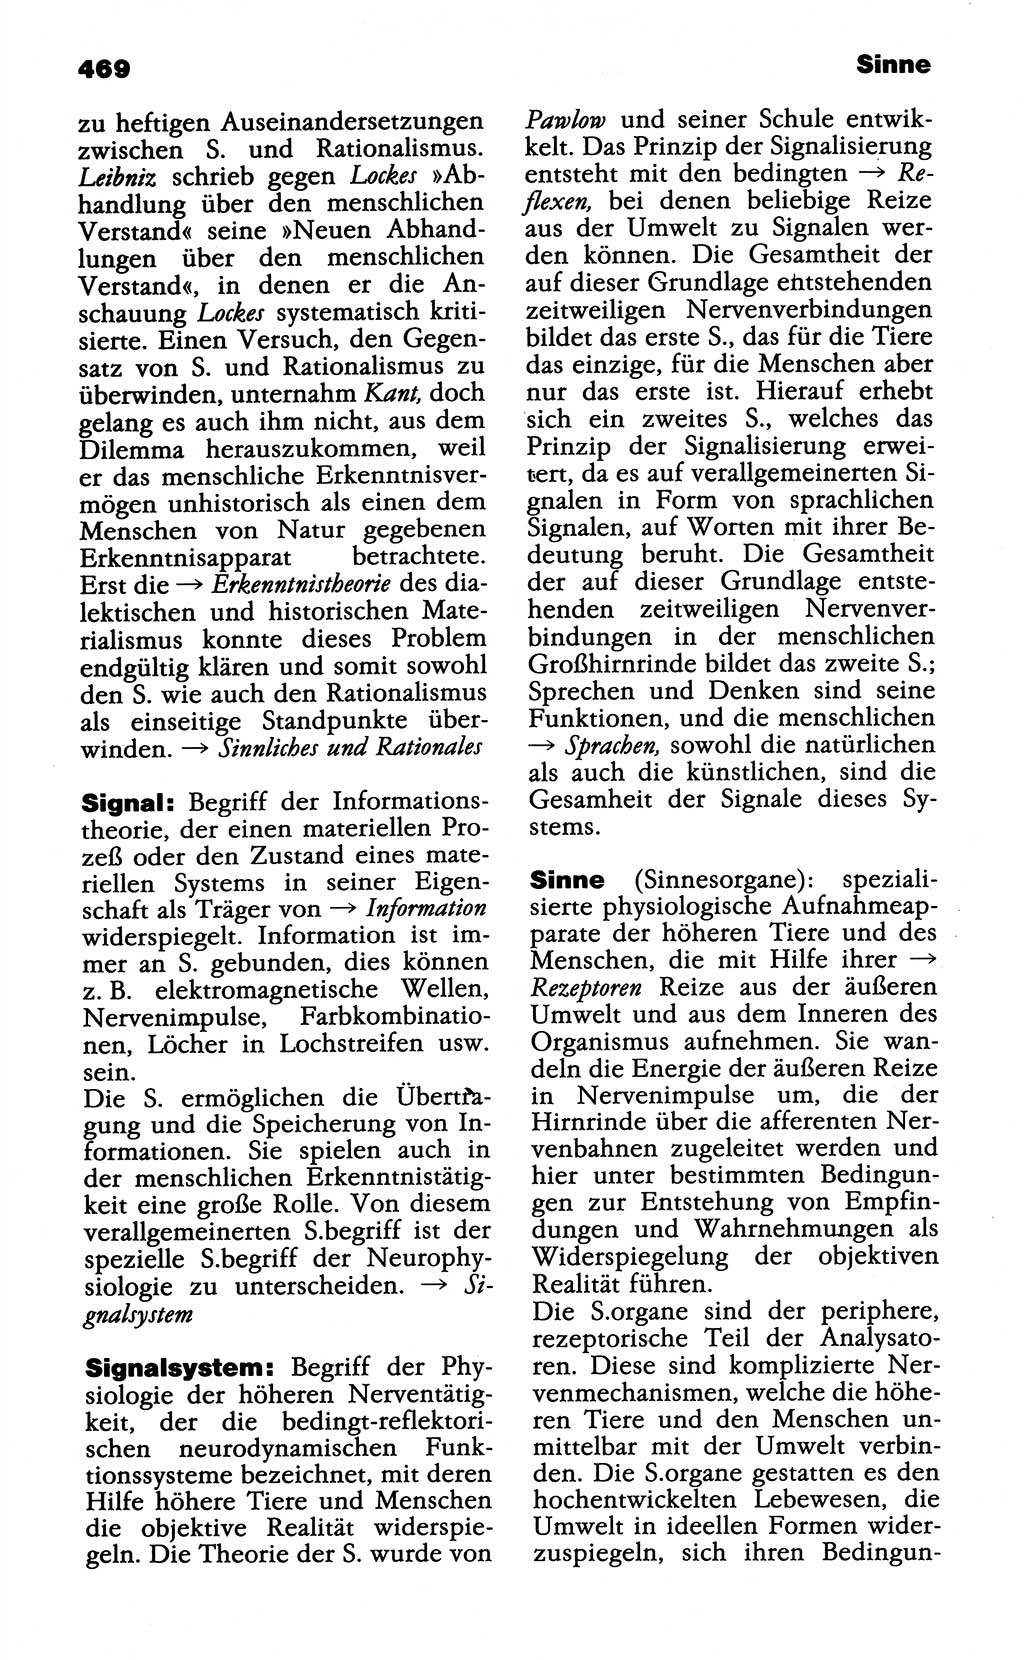 Wörterbuch der marxistisch-leninistischen Philosophie [Deutsche Demokratische Republik (DDR)] 1985, Seite 469 (Wb. ML Phil. DDR 1985, S. 469)